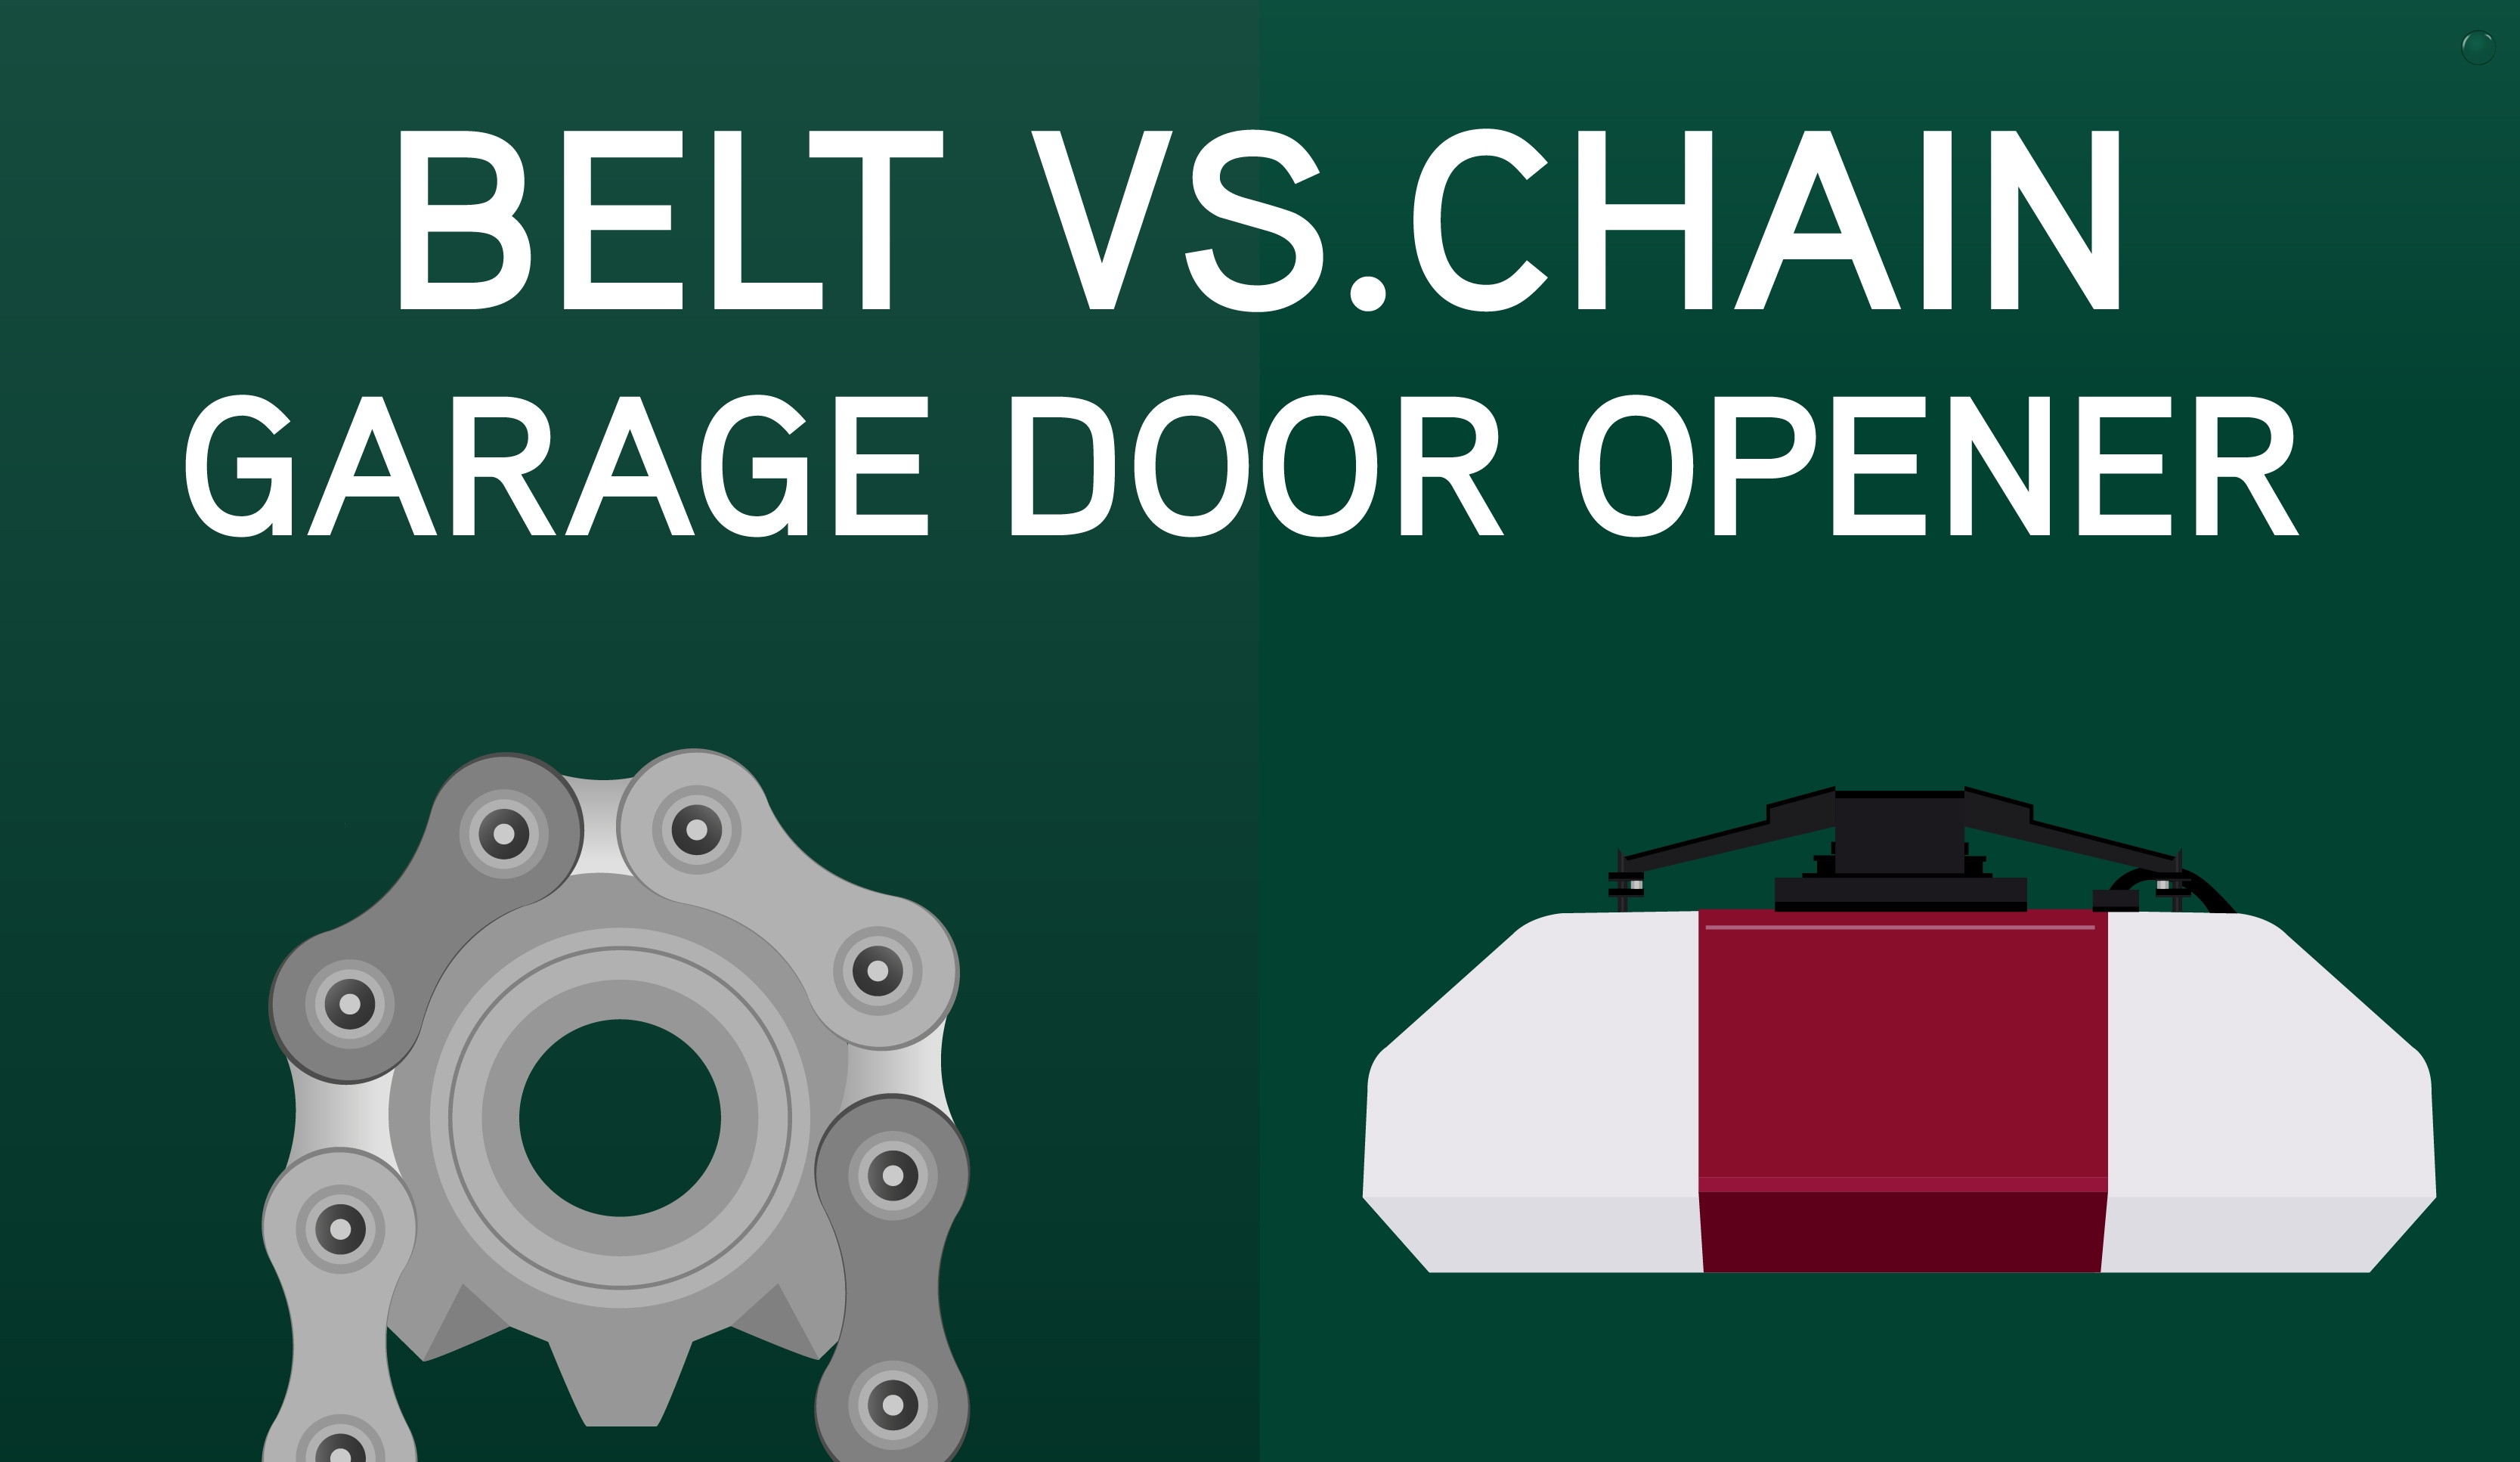 belt vs. chain garage door openers blog illustration